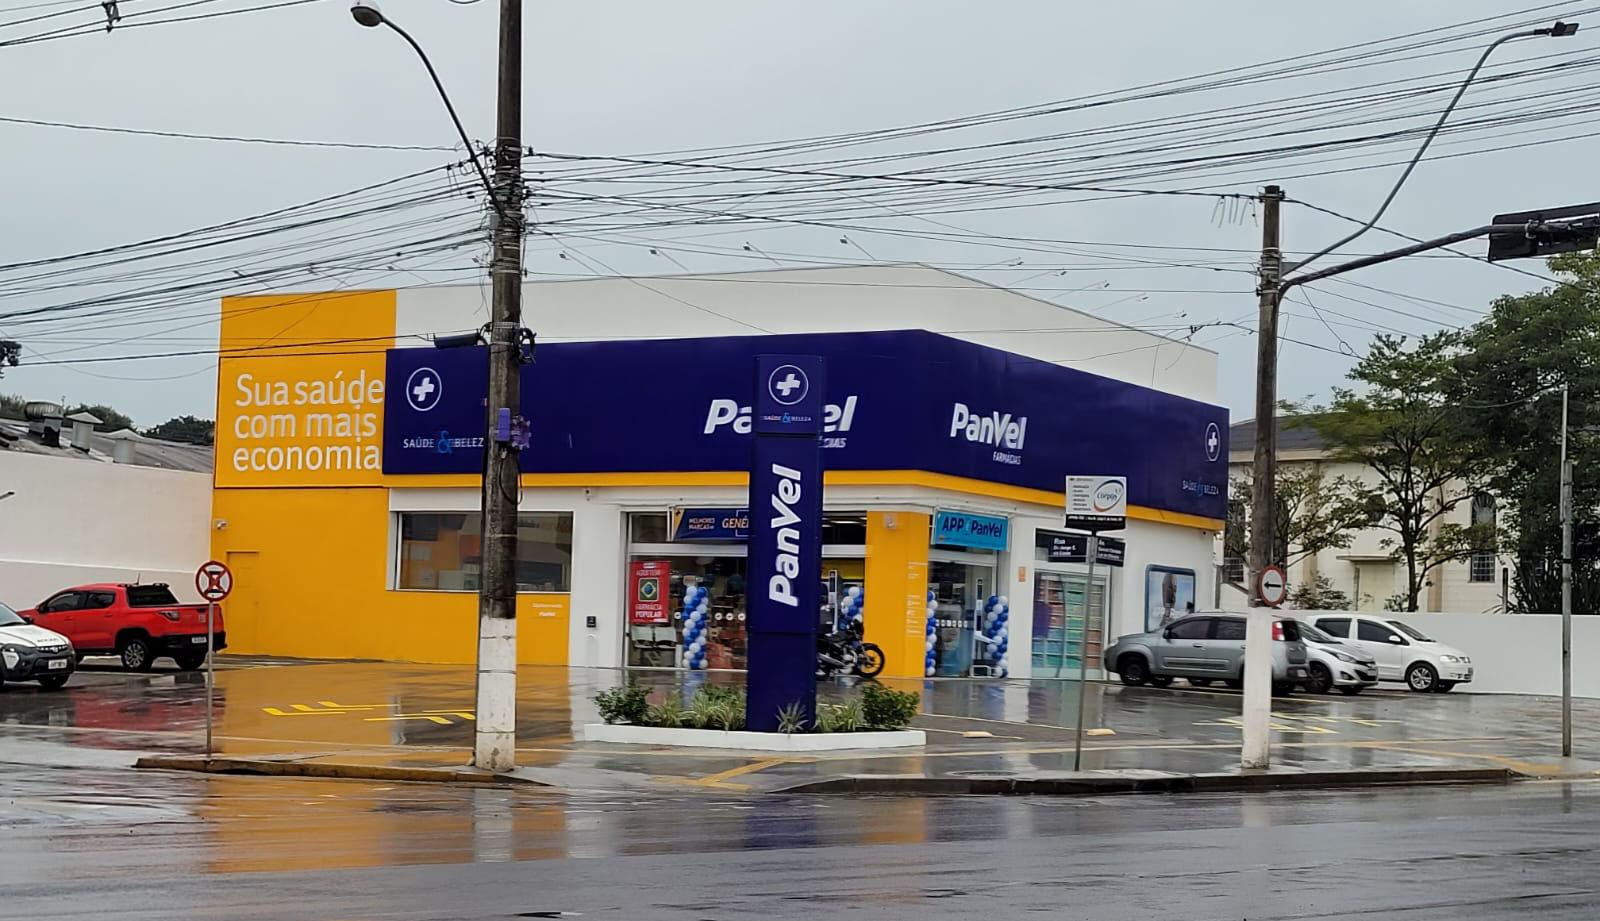 Rede de farmácias Panvel inaugura sua quarta filial em Gravataí